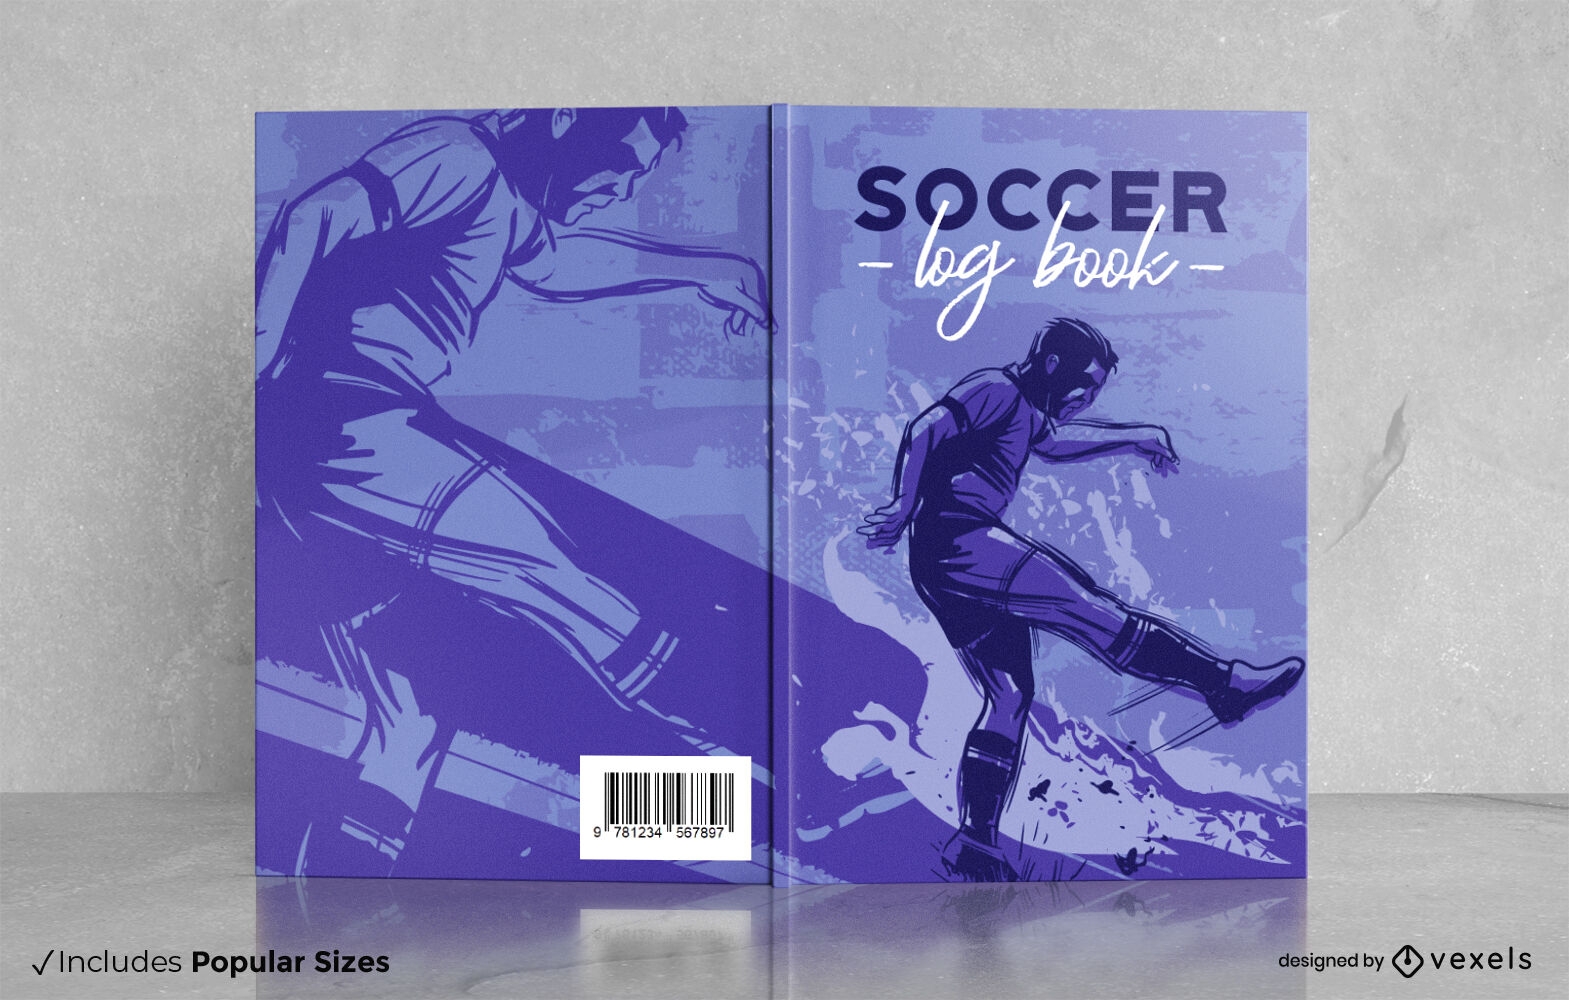 Descarga Vector De Diseño De Portada De Libro De Hombre Jugando Al Fútbol